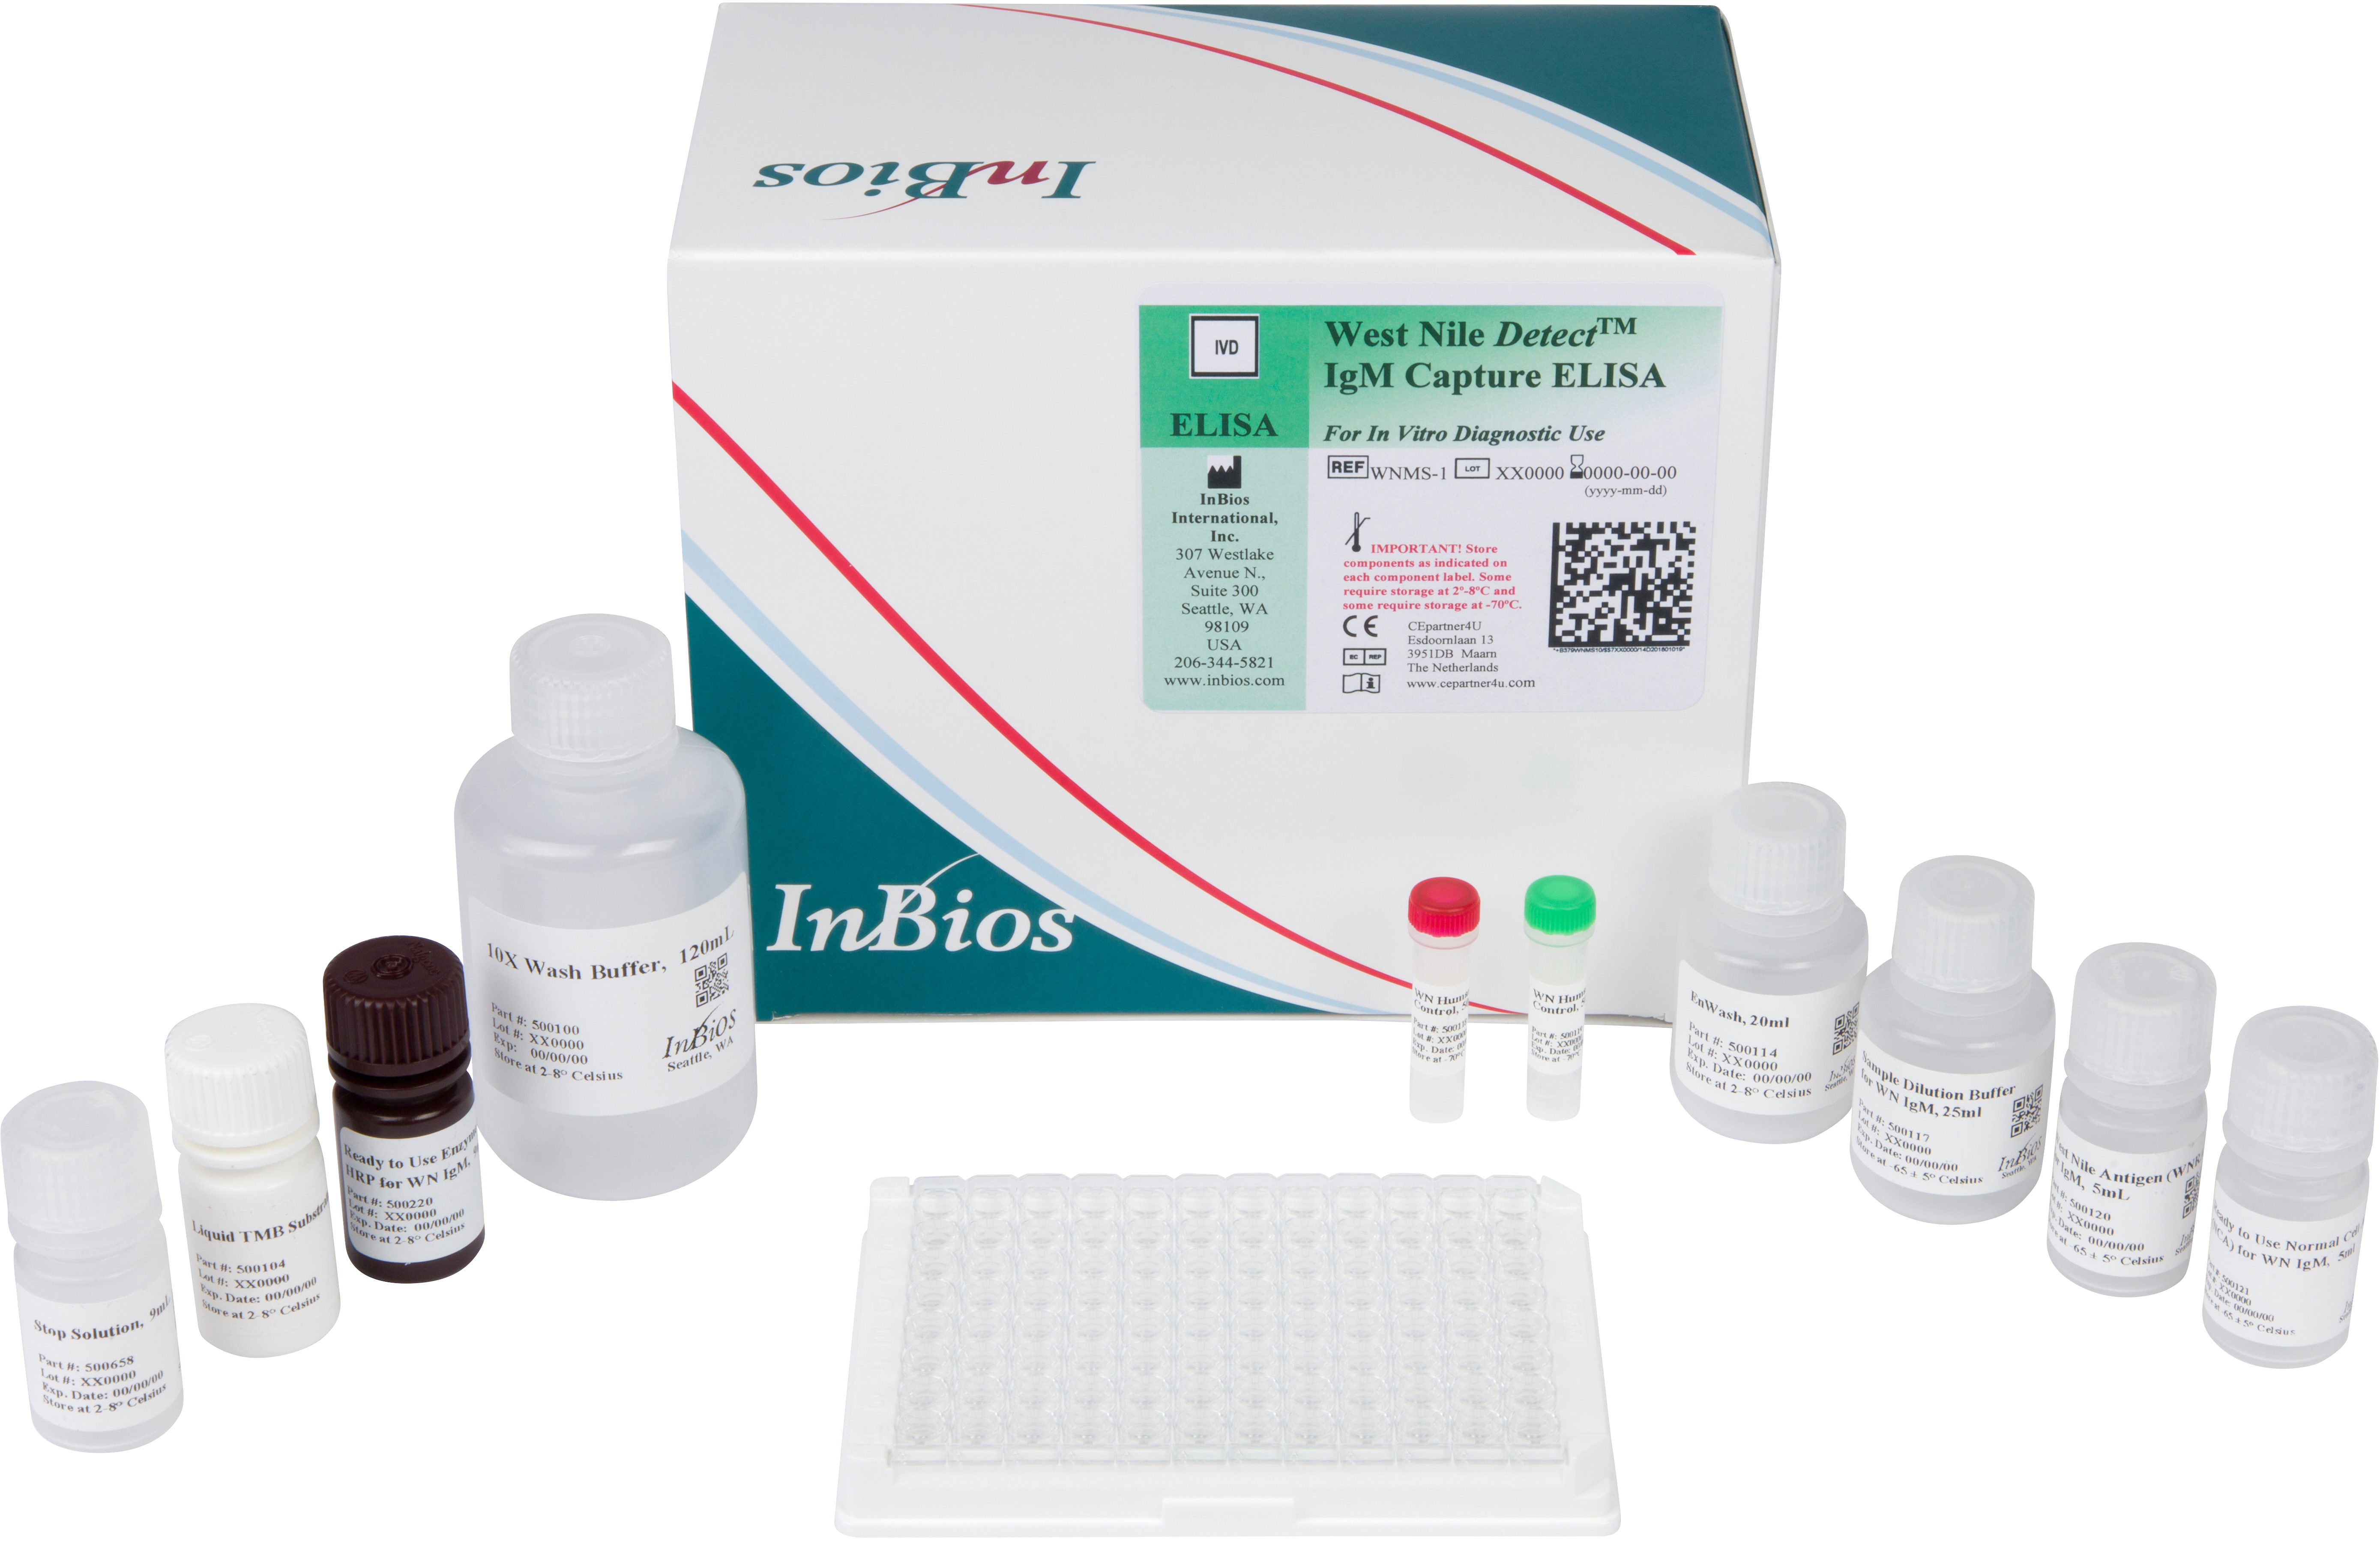 ALLIANCE BIO EXPERTISE et NG BIOTECH s'associent pour la commercialisation  des kits sérologiques de détection du COVID-19 (NG-Test® IgG-IgM COVID-19)  - Alliance Bio Expertise